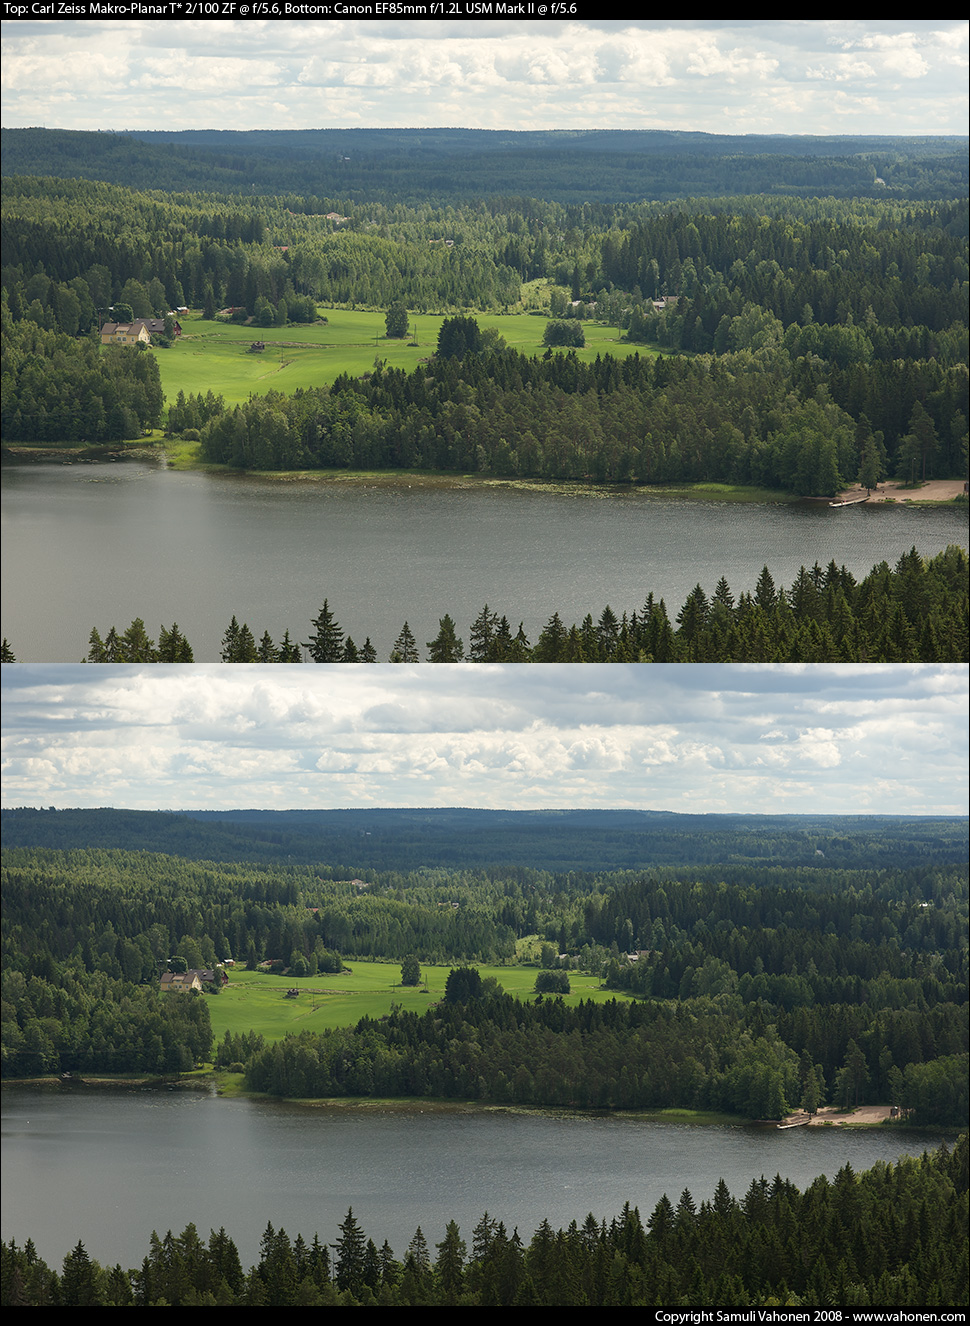 Carl Zeiss Makro-Planar T* 2/100 ZF vs. vs. Canon EF85mm f/1.2L USM Mark II - Landscape - f/5.6